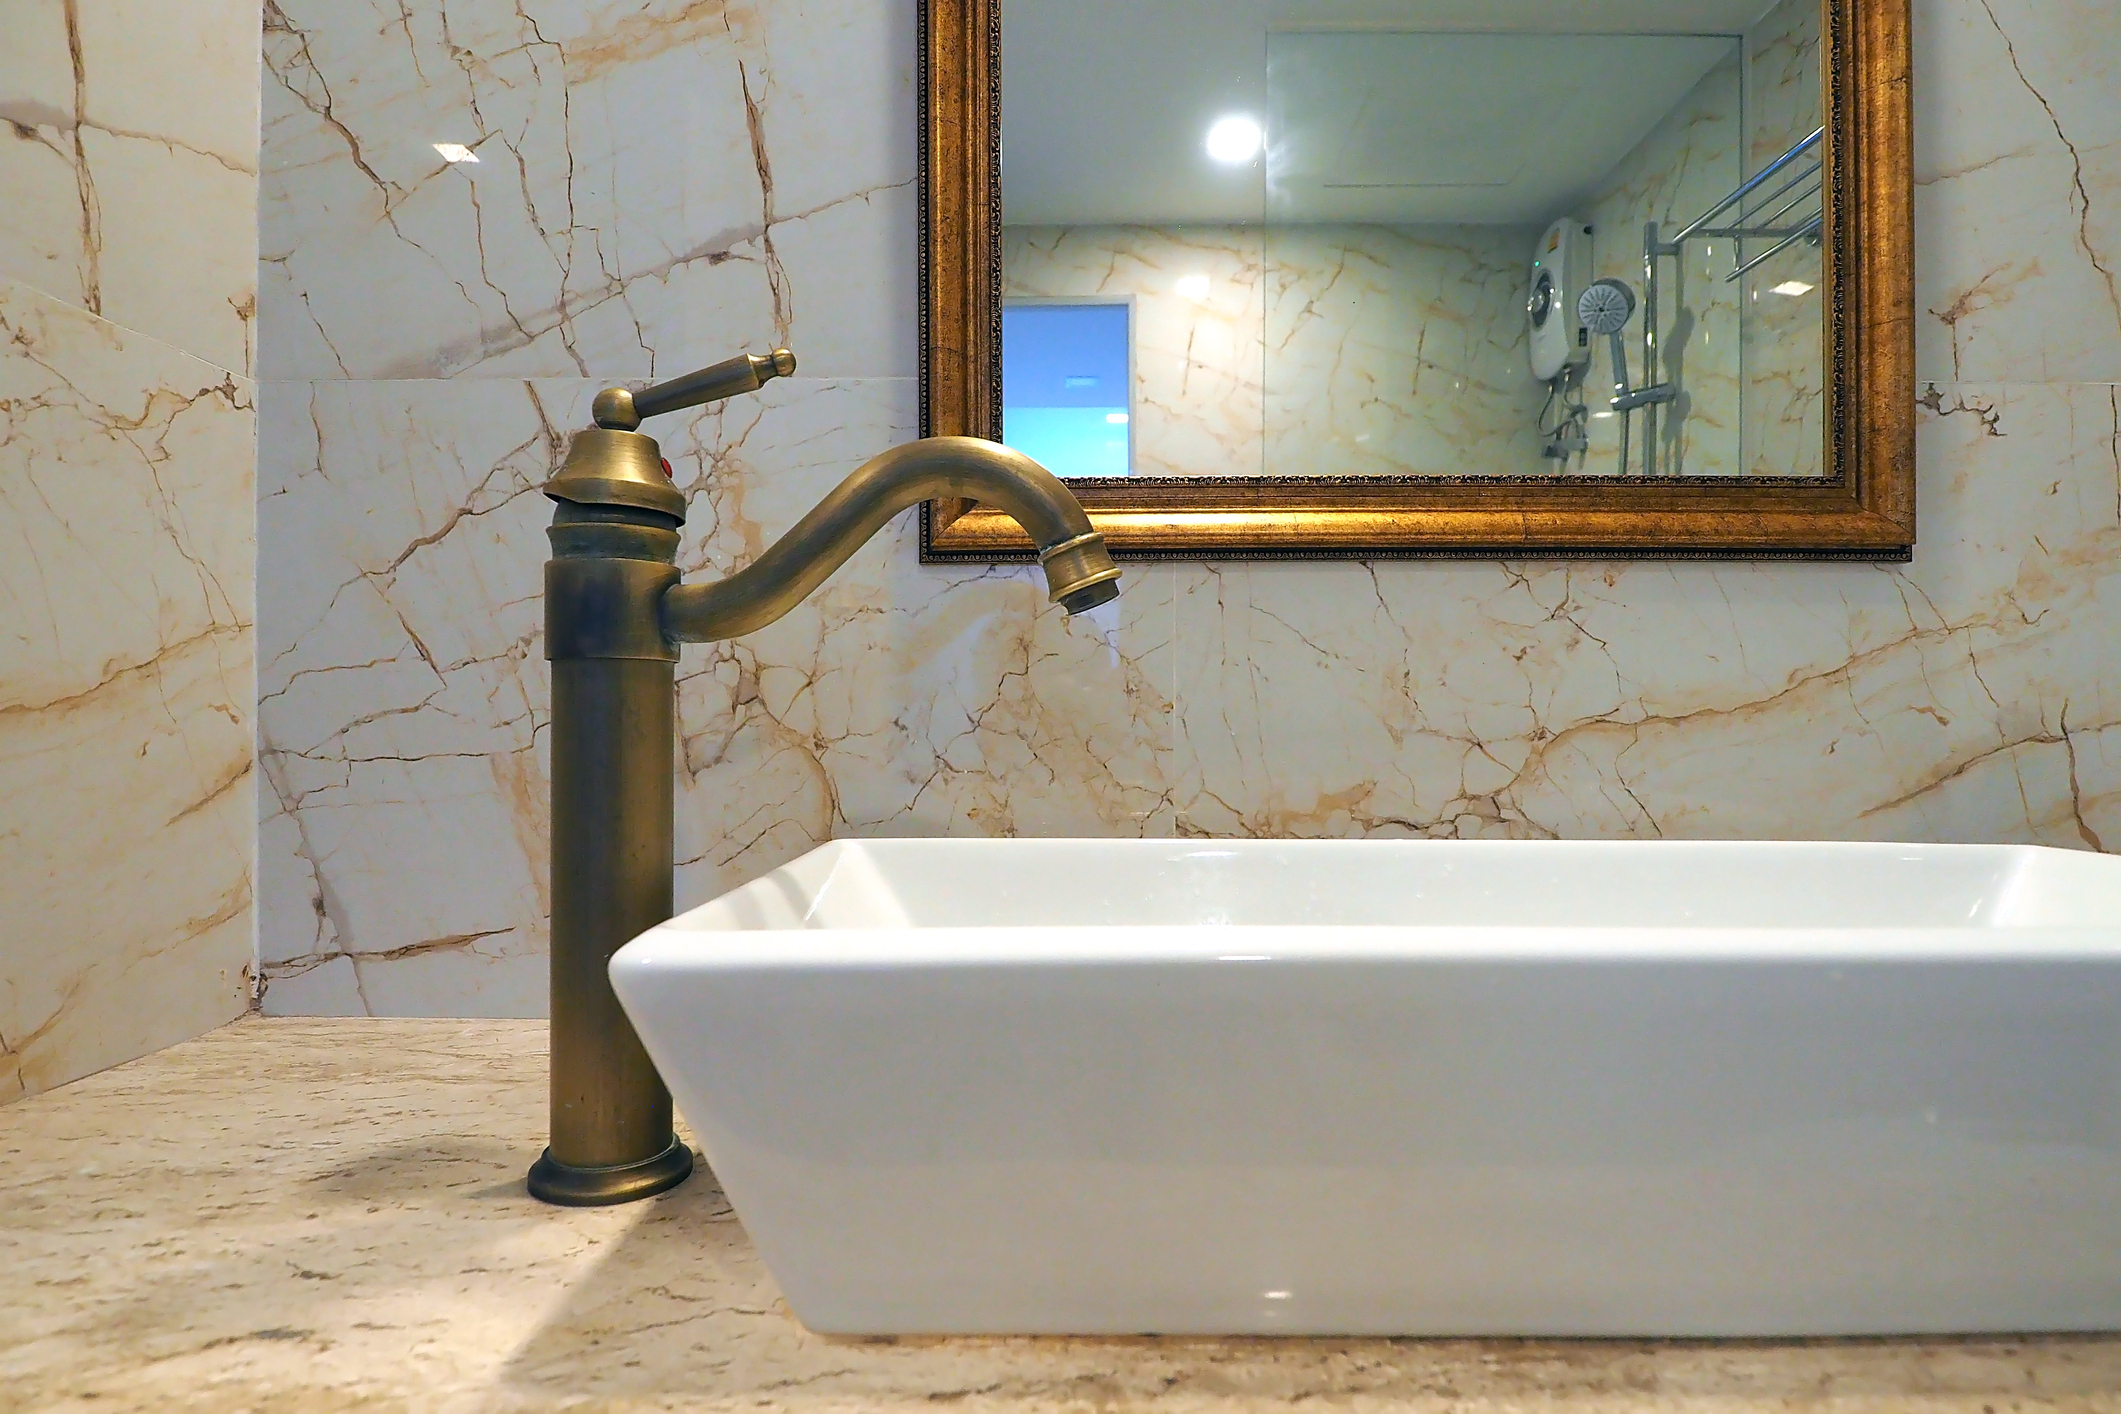 Vo vintage kúpeľni sa uplatnia moderné armatúry so starosvetským dizajnom